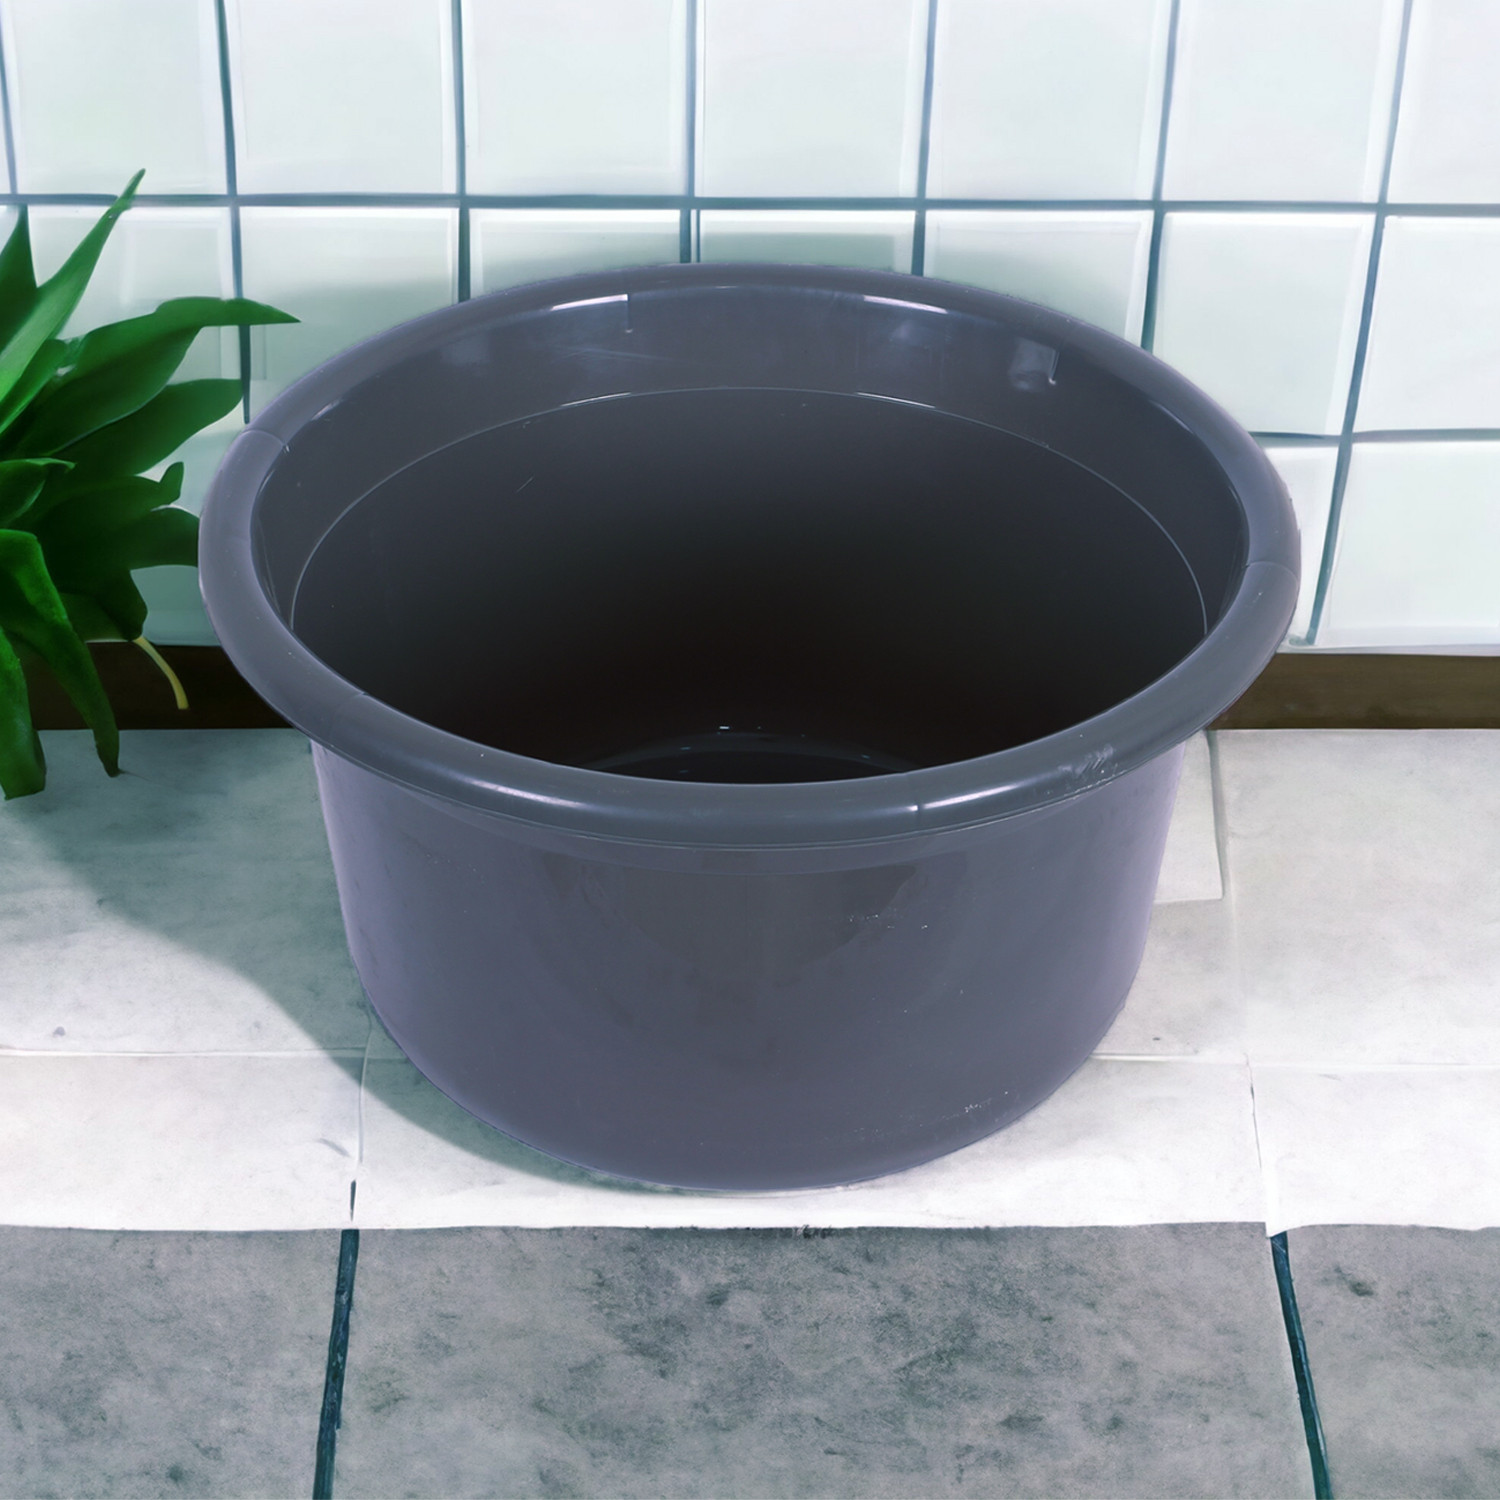 Kuber Industries Bath Tub | Versatile Utility Gaint Tub | Plastic Bath Tub for Baby | Baby Bathing Tub | Clothes Washing Tub For Bathroom | Feeding Pan Tub | TUB-25 LTR | Gray